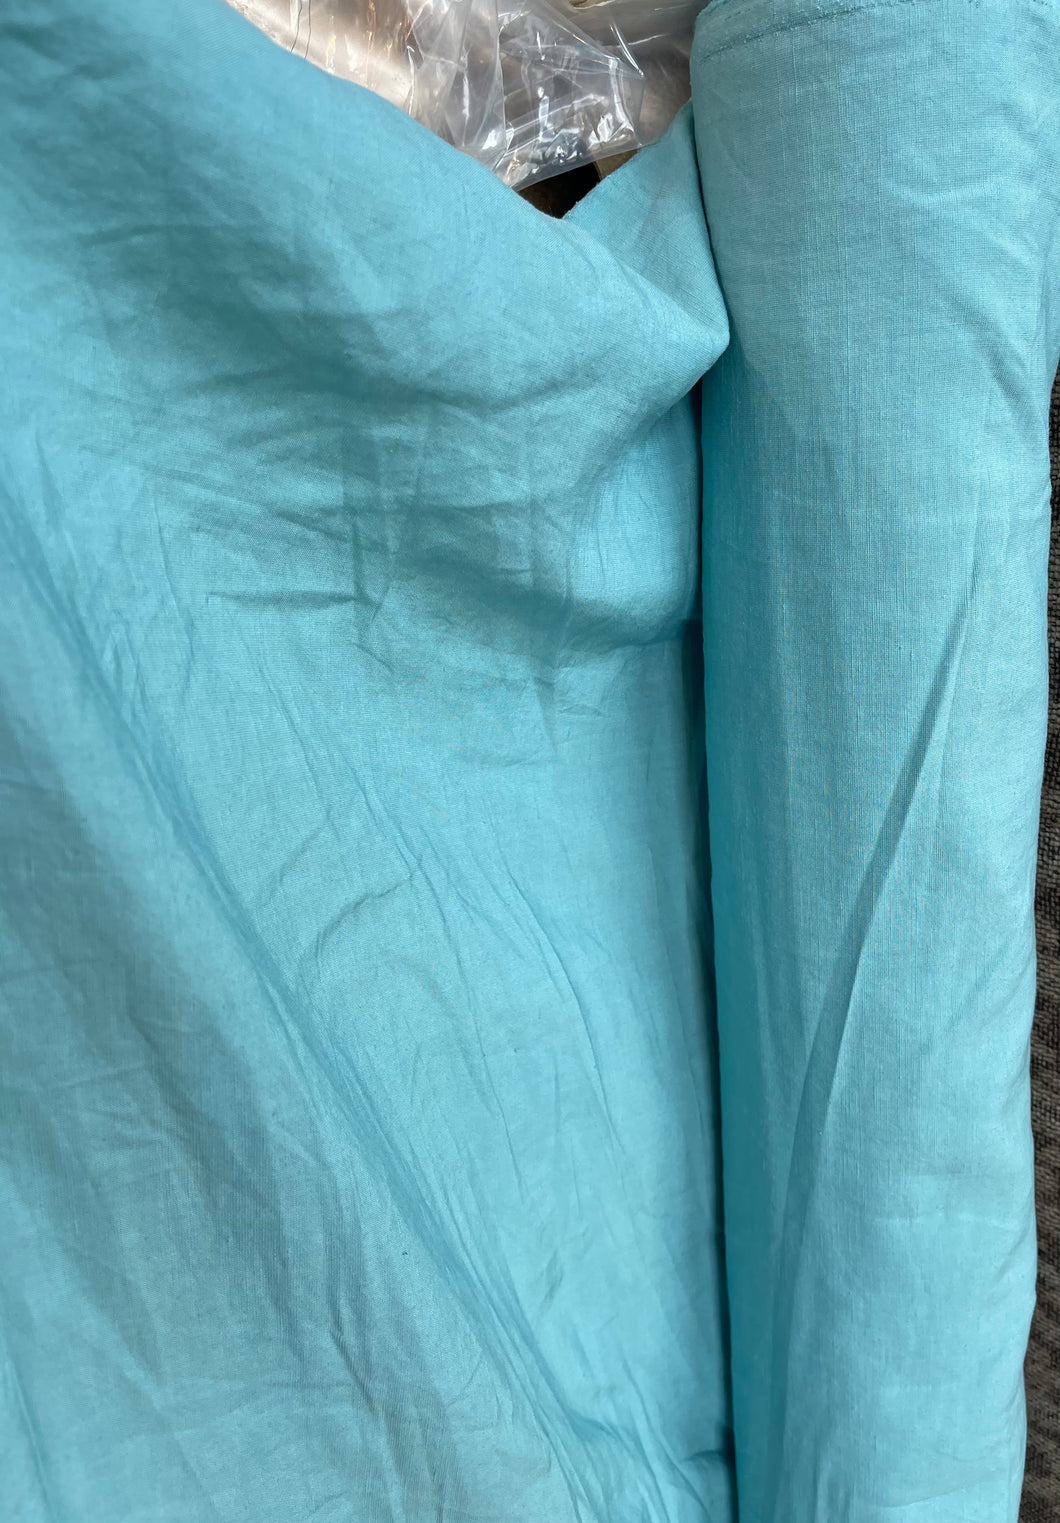 Linen Viscose Textured - Light blue- 1/2 metre